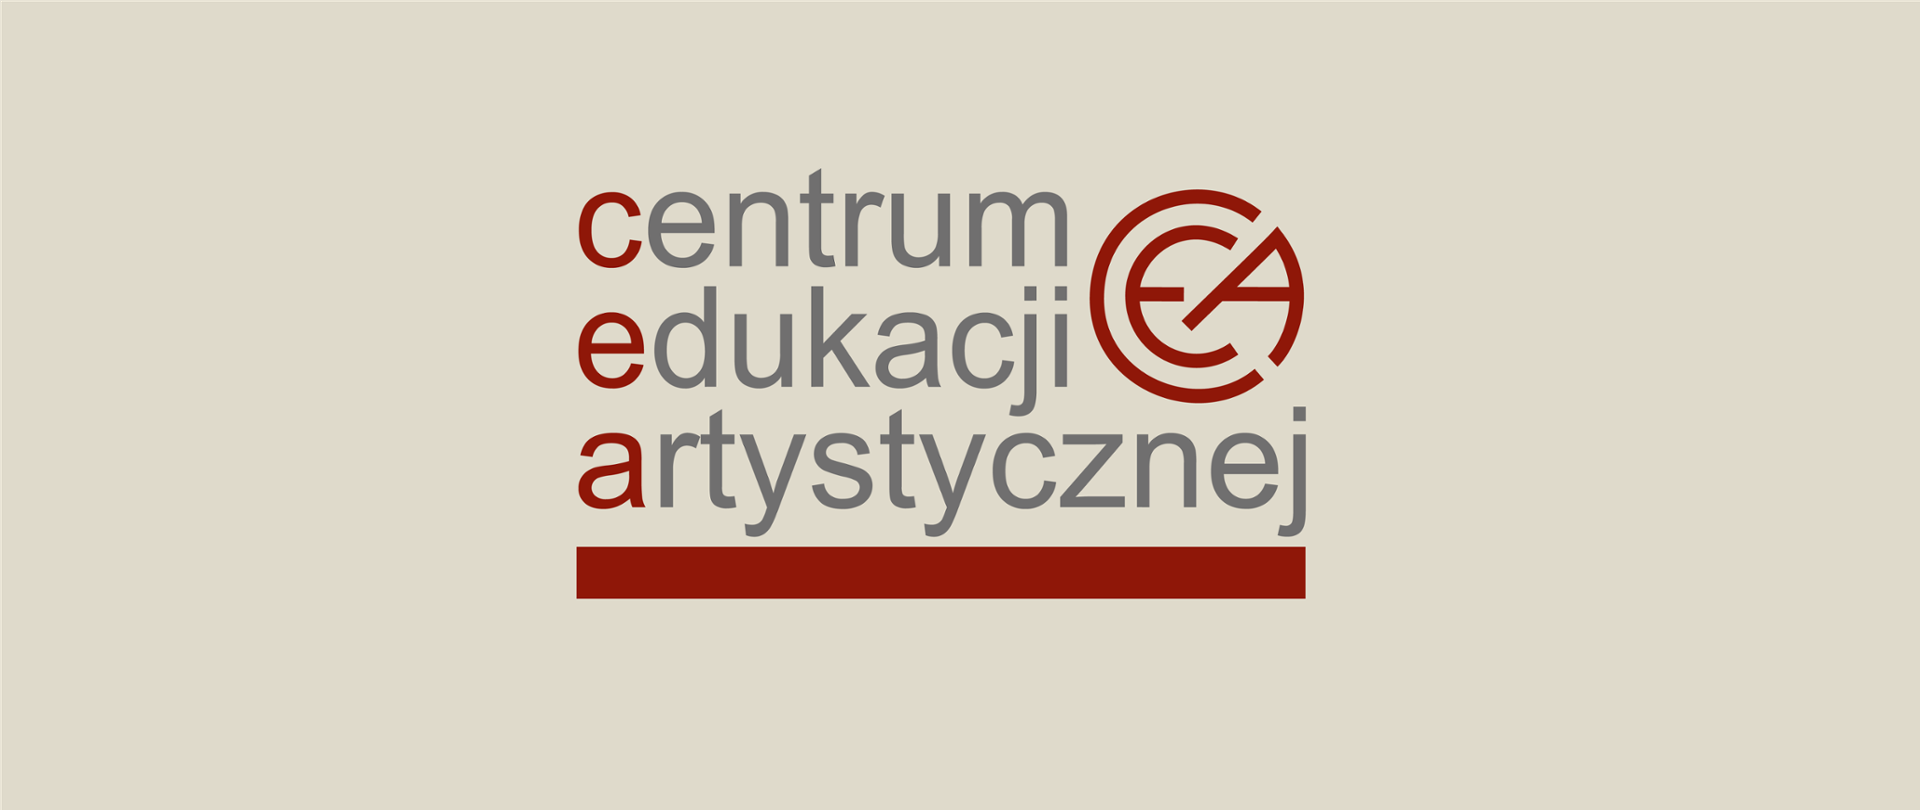 Obraz na jasnobeżowym tle zawiera napis w trzech wierszach Centrum Edukacji Artystycznej. Pierwsze litery i grube podkreślenie są w kolorze bordowym, pozostałe litery są szare.